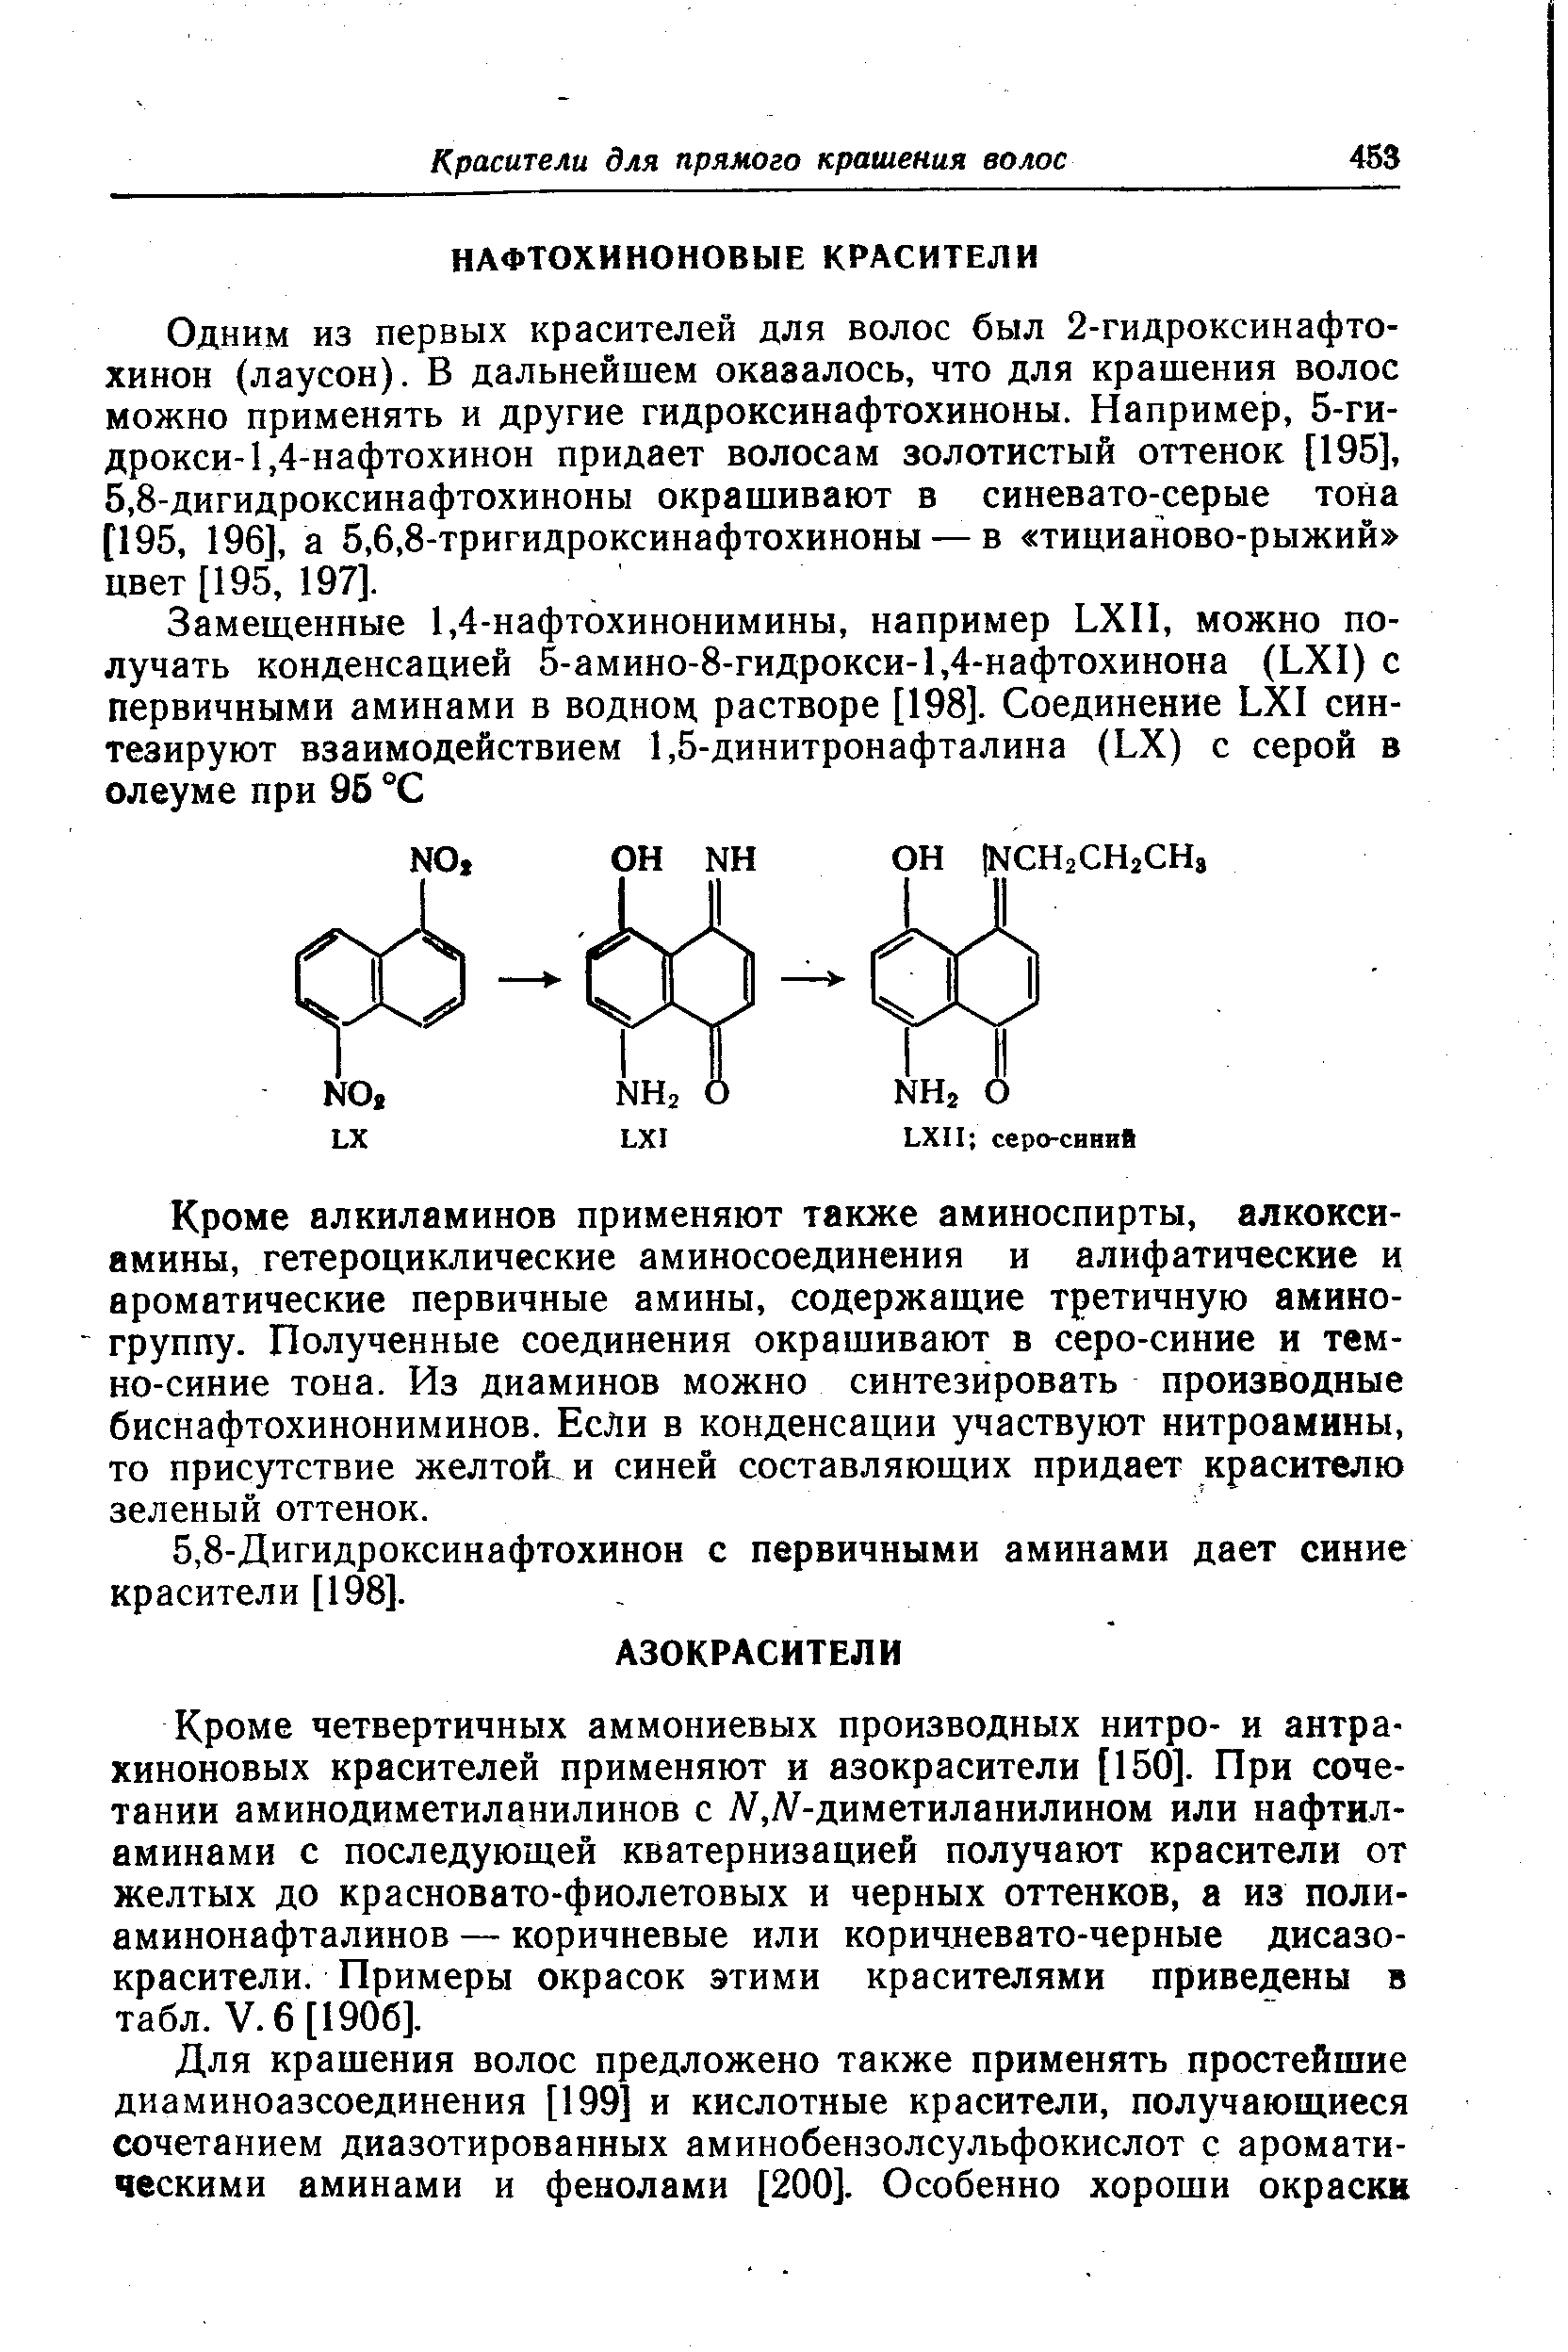 Кроме алкиламинов применяют также аминоспирты, алкокси-амины, гетероциклические аминосоединения и алифатические и ароматические первичные амины, содержащие третичную аминогруппу. Полученные соединения окрашивают в серо-синие и темно-синие тона. Из диаминов можно синтезировать производные биснафтохинониминов. Если в конденсации участвуют нитроамины, то присутствие желтой и синей составляющих придает красителю зеленый оттенок.